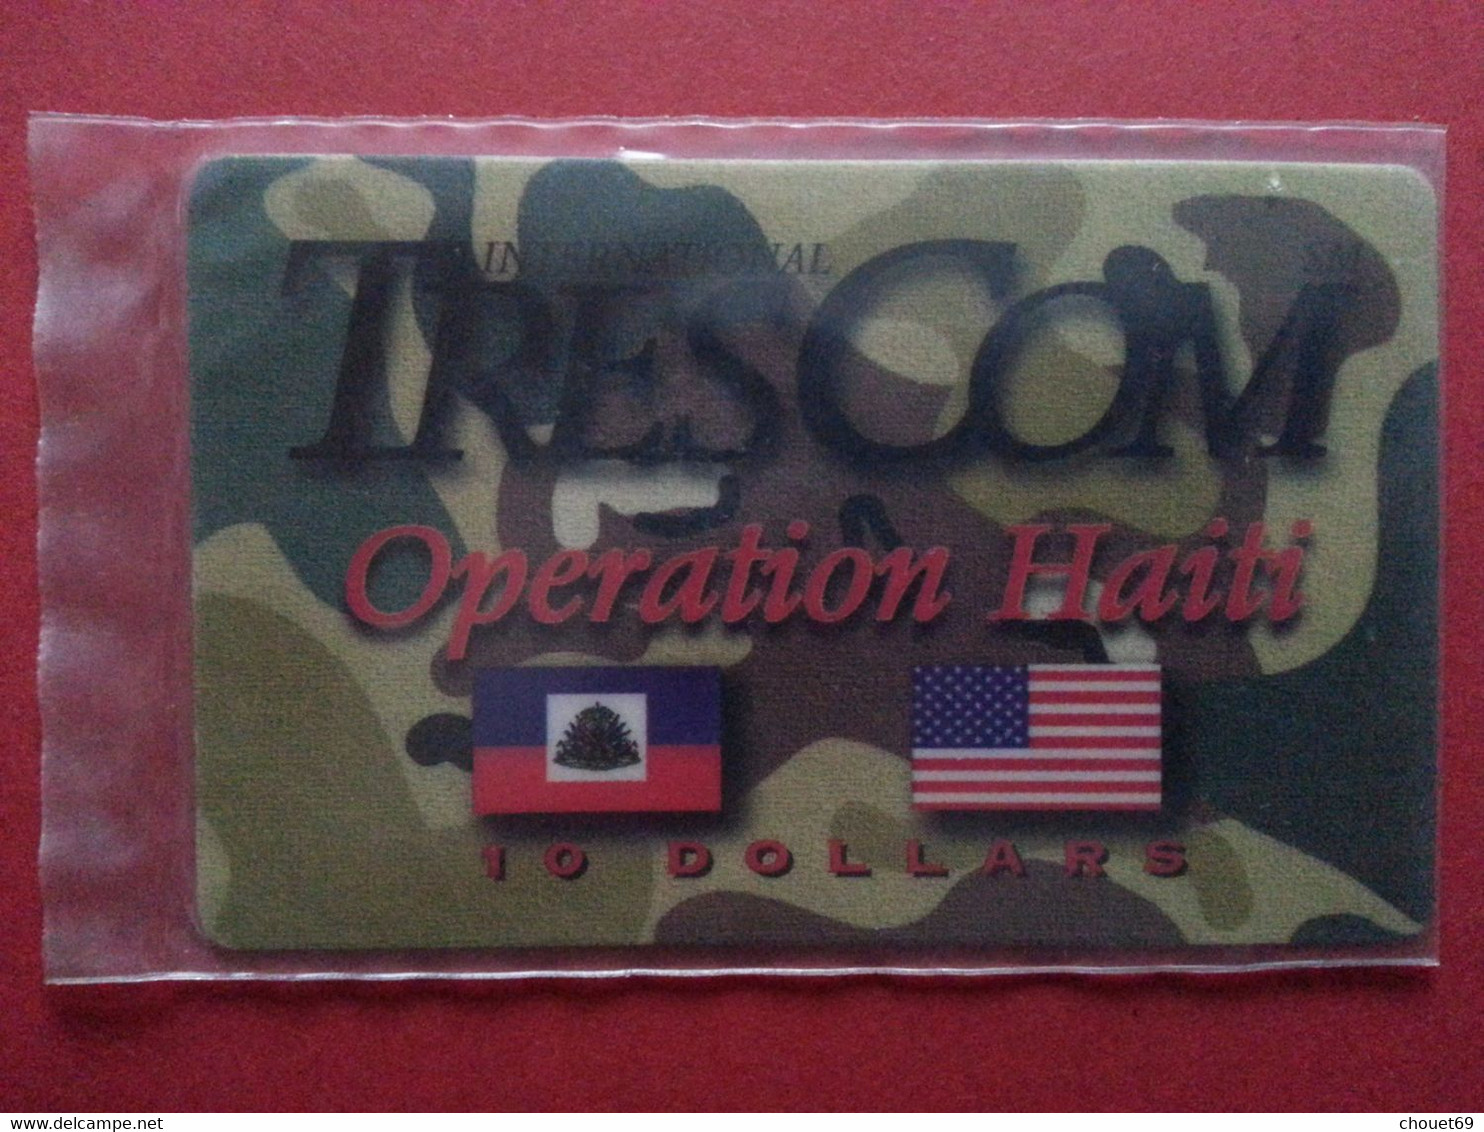 HAITI - HAI PA1 TRESCOM Blister OPERATION HAITI 10 USD Dollars MINT NSB 4/97 Army Militaria (TH0320 - Haití